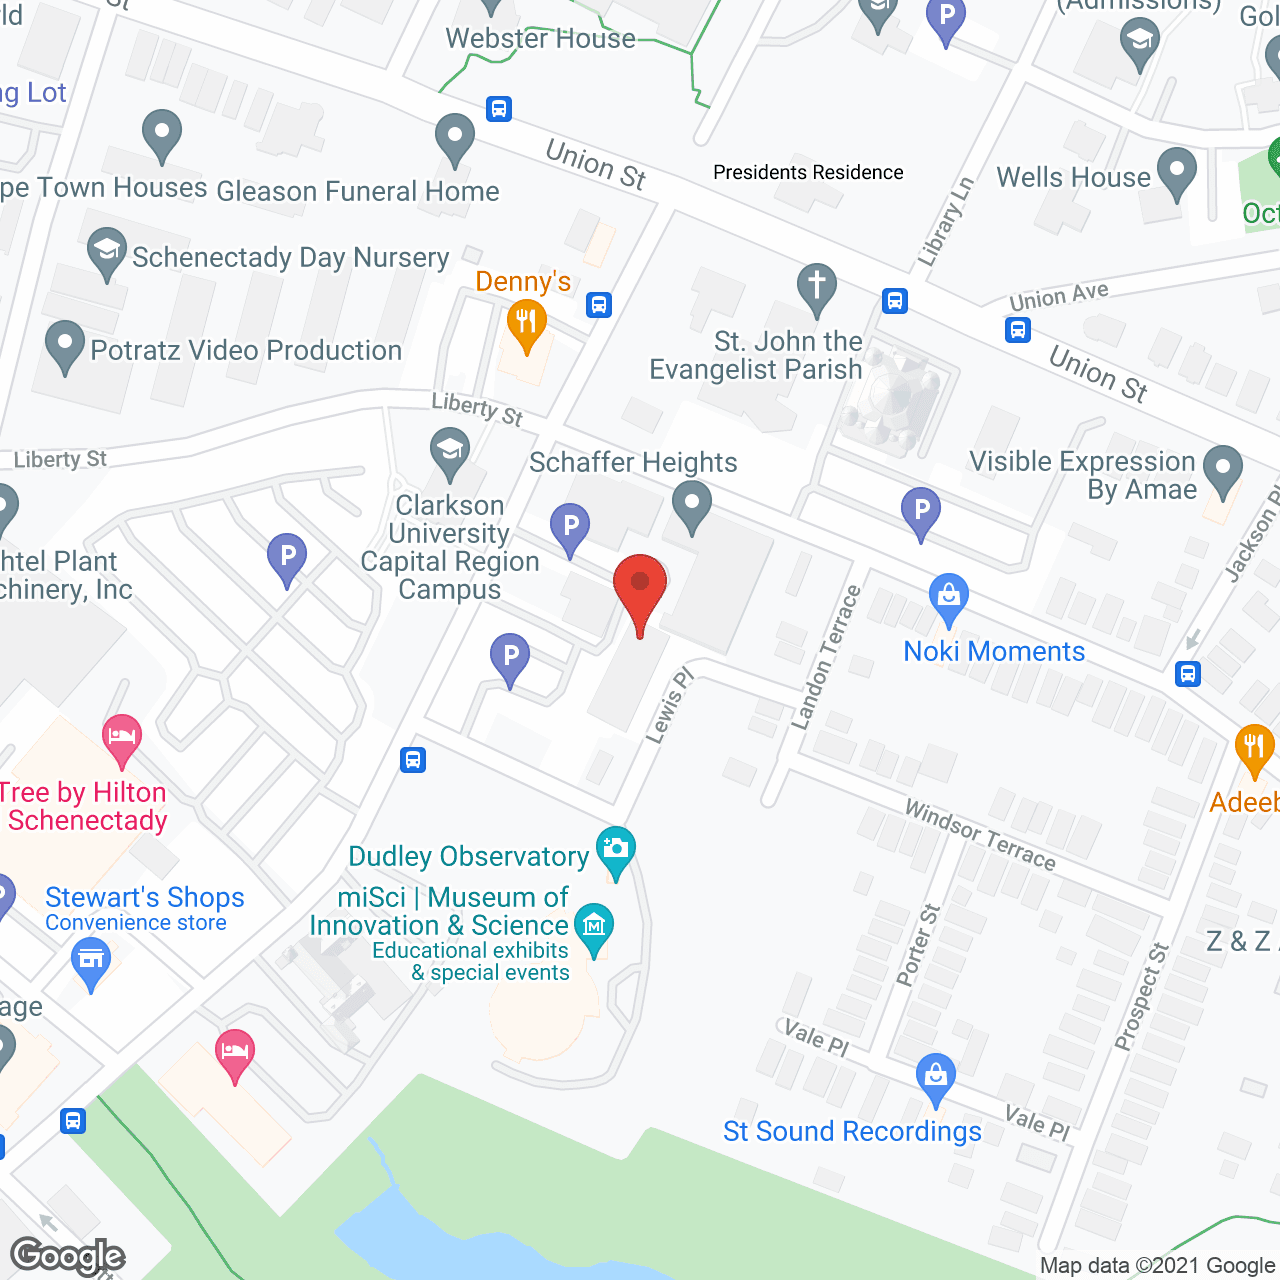 Schaffer Heights in google map